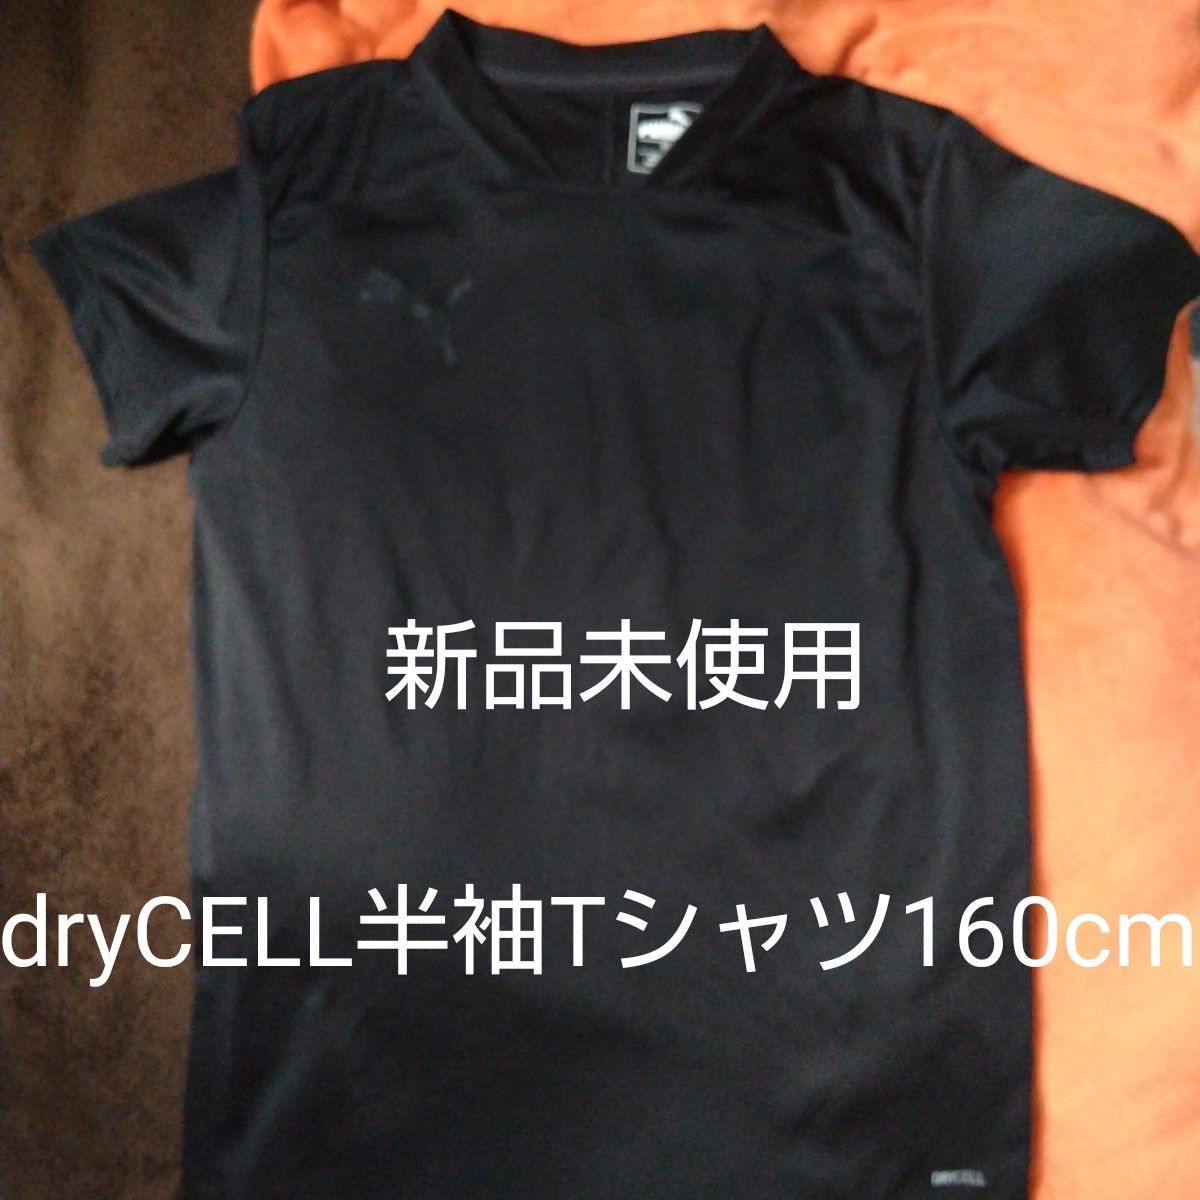 新品未使用『puma　dryCELL半袖Tシャツ160cm』